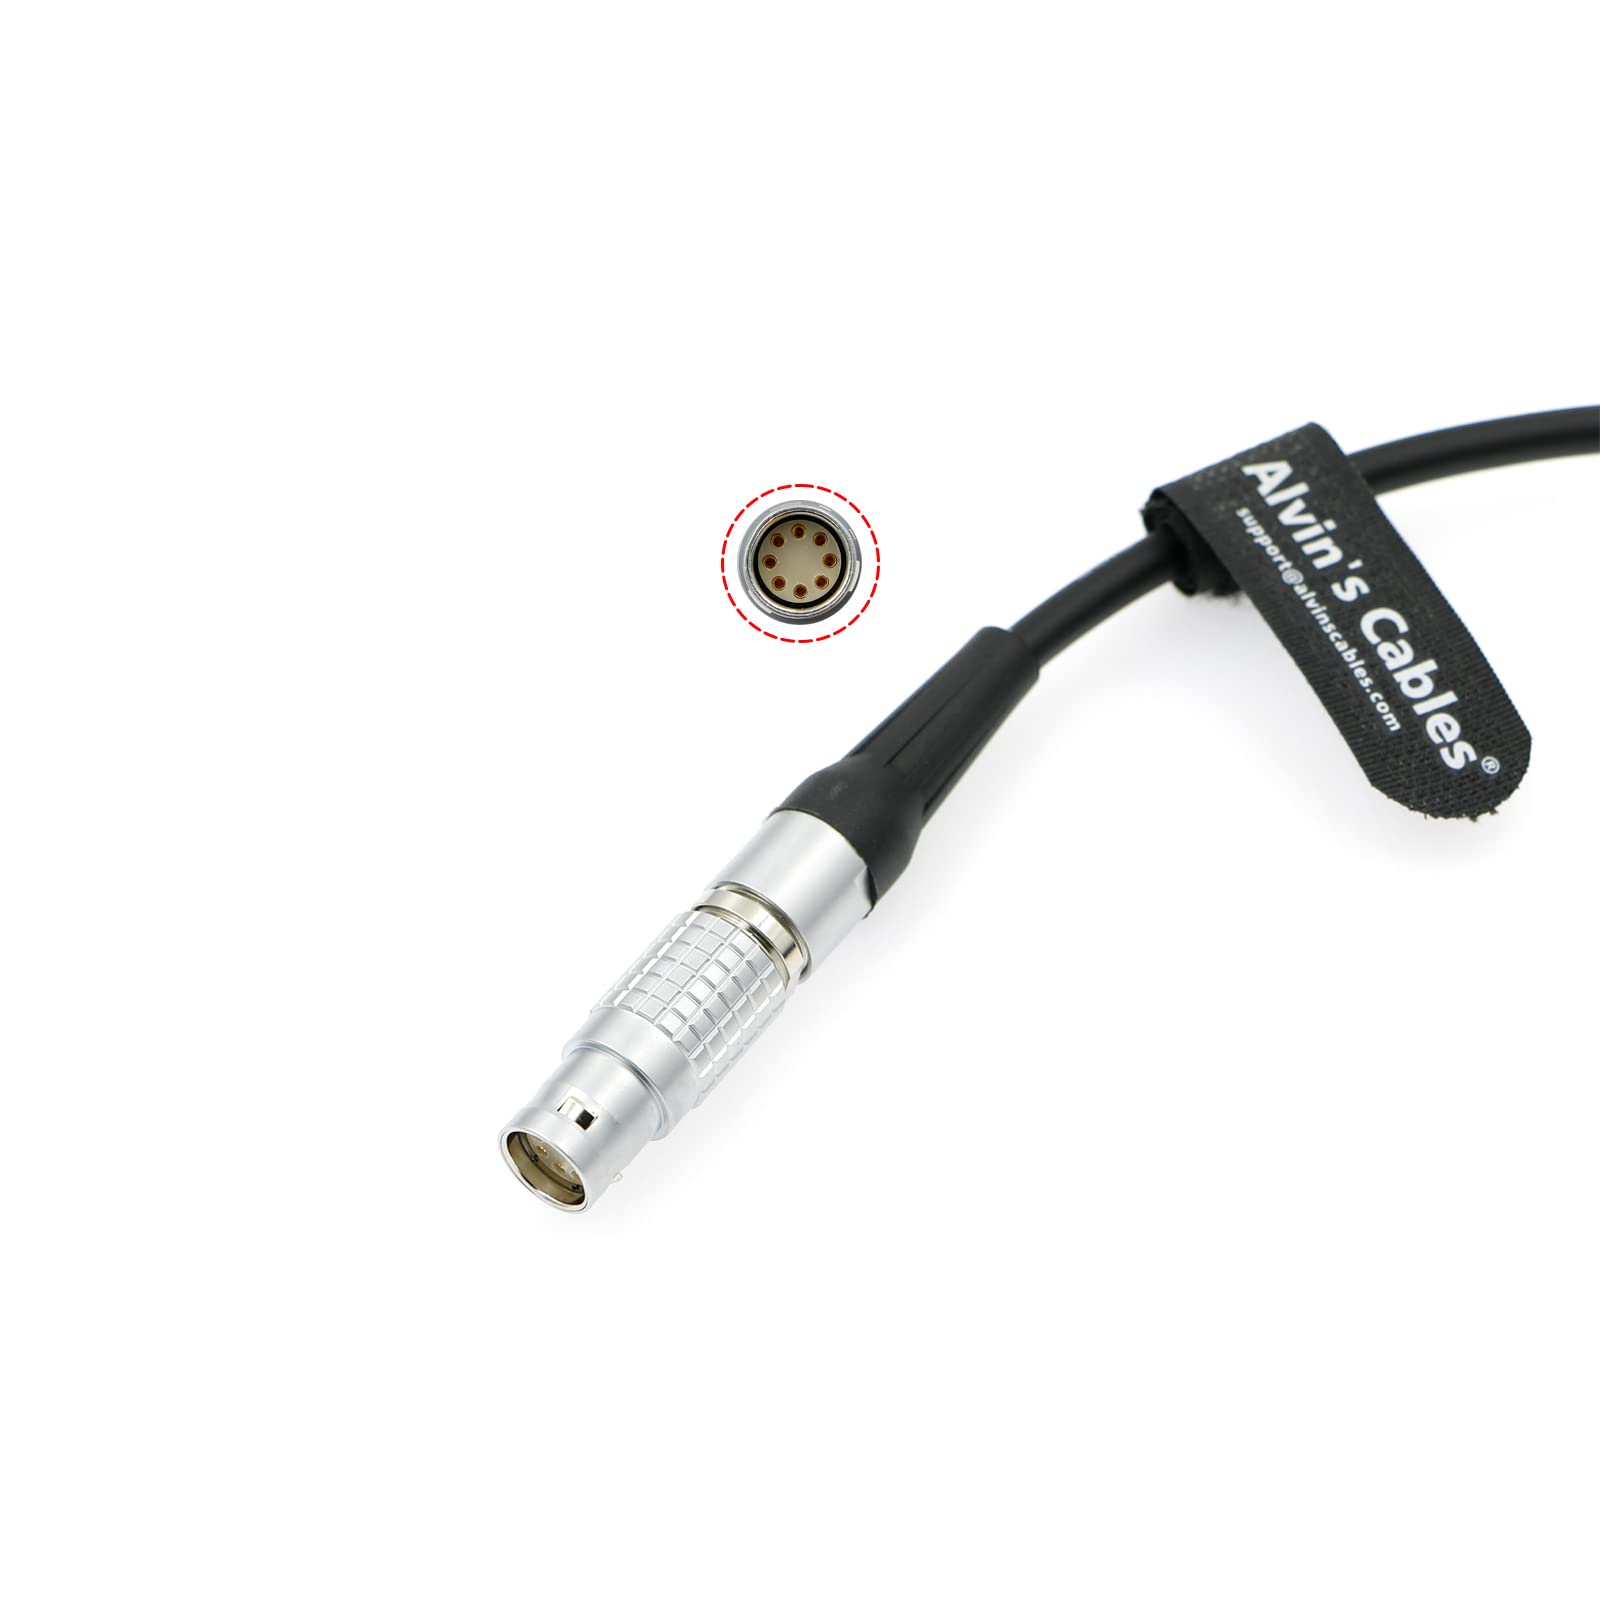 Stromkabel für ARRI Alexa Mini Amira Kamera XLR 3 Pin Stecker auf 2B 8 Pin Buchse Spiralkabel Alvin's Cables